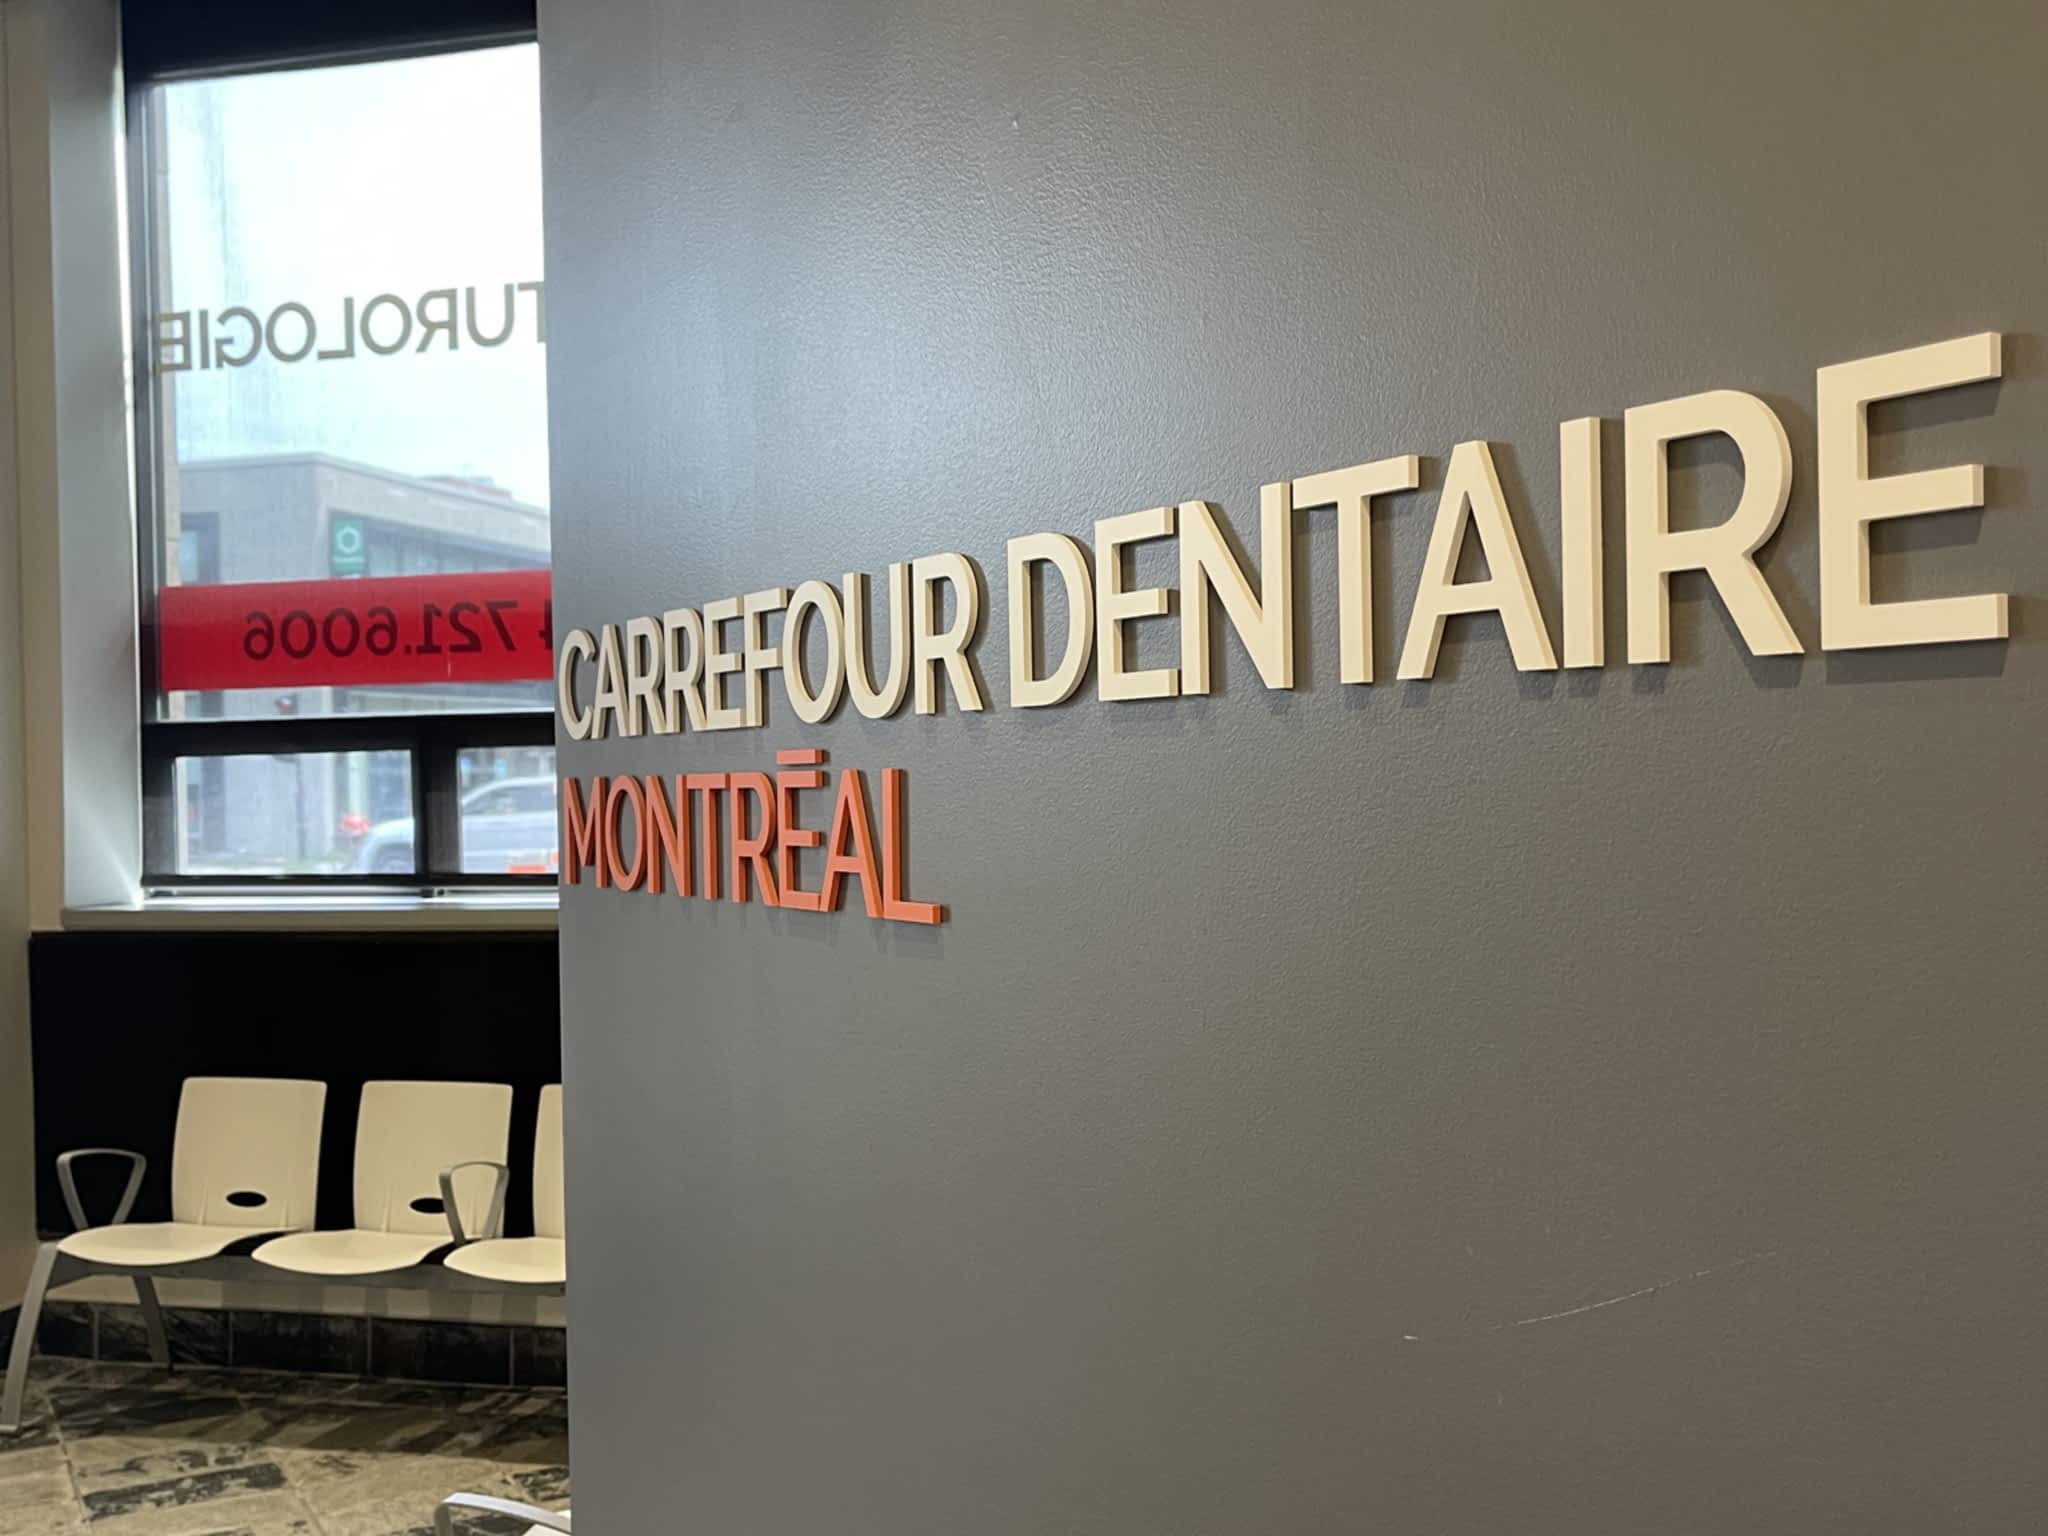 photo Carrefour dentaire de Montréal